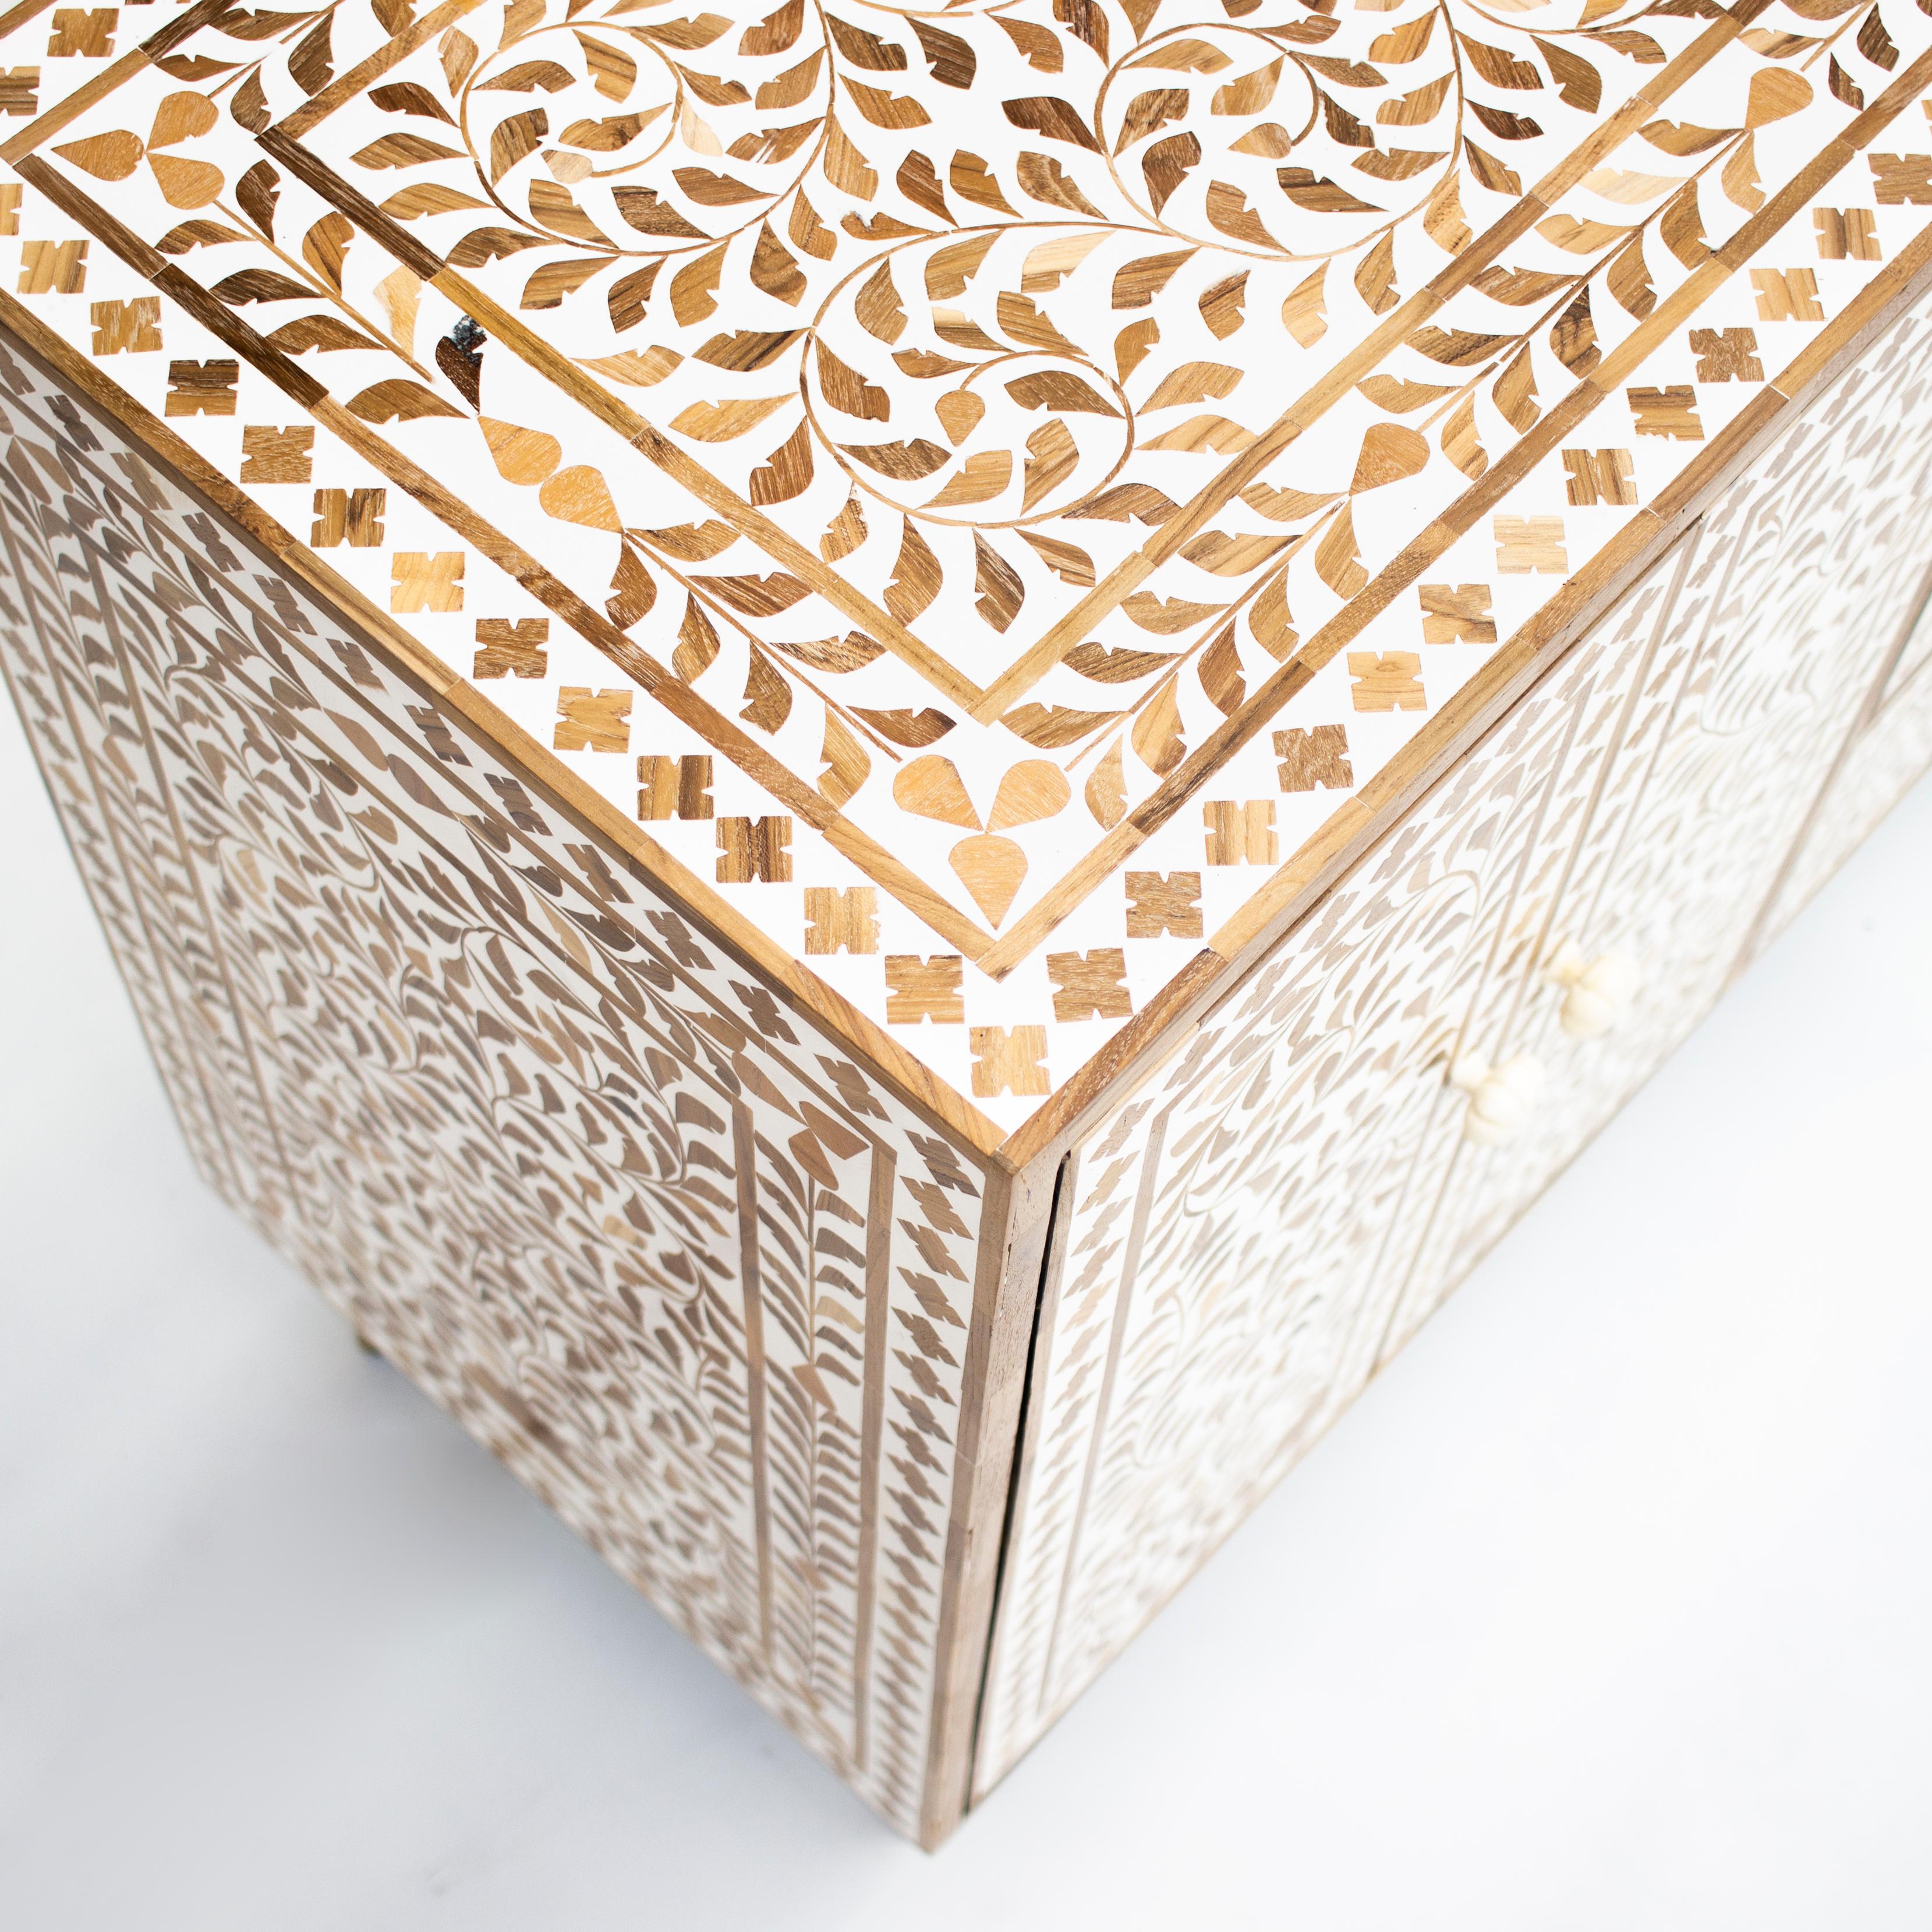 Wir stellen Ihnen den exquisiten Teakholz-Schrank mit Intarsien vor, der nach der traditionellen Methode der Möbelherstellung mit Intarsien handgefertigt wird. Dieses atemberaubende Stück besteht aus verschlungenen Teakholzstücken, die kunstvoll zu